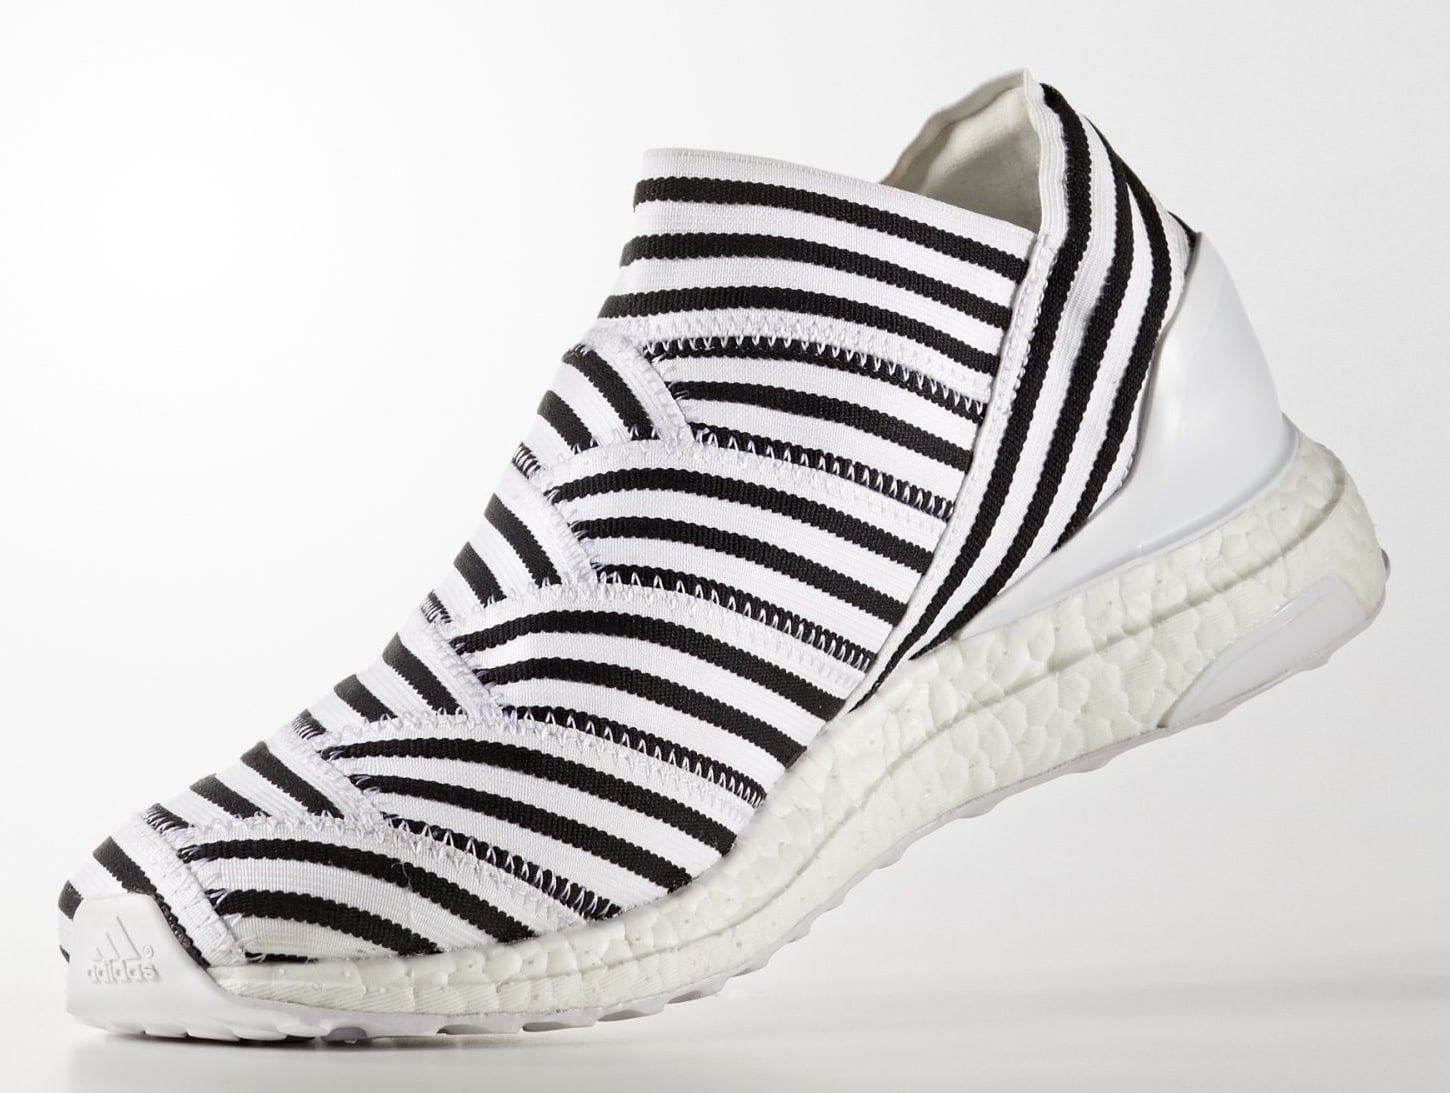 Adidas Nemeziz Tango 17+ 360 Agility &#x27;Running White/Running White/Core Black&#x27; CG3656 (Medial)